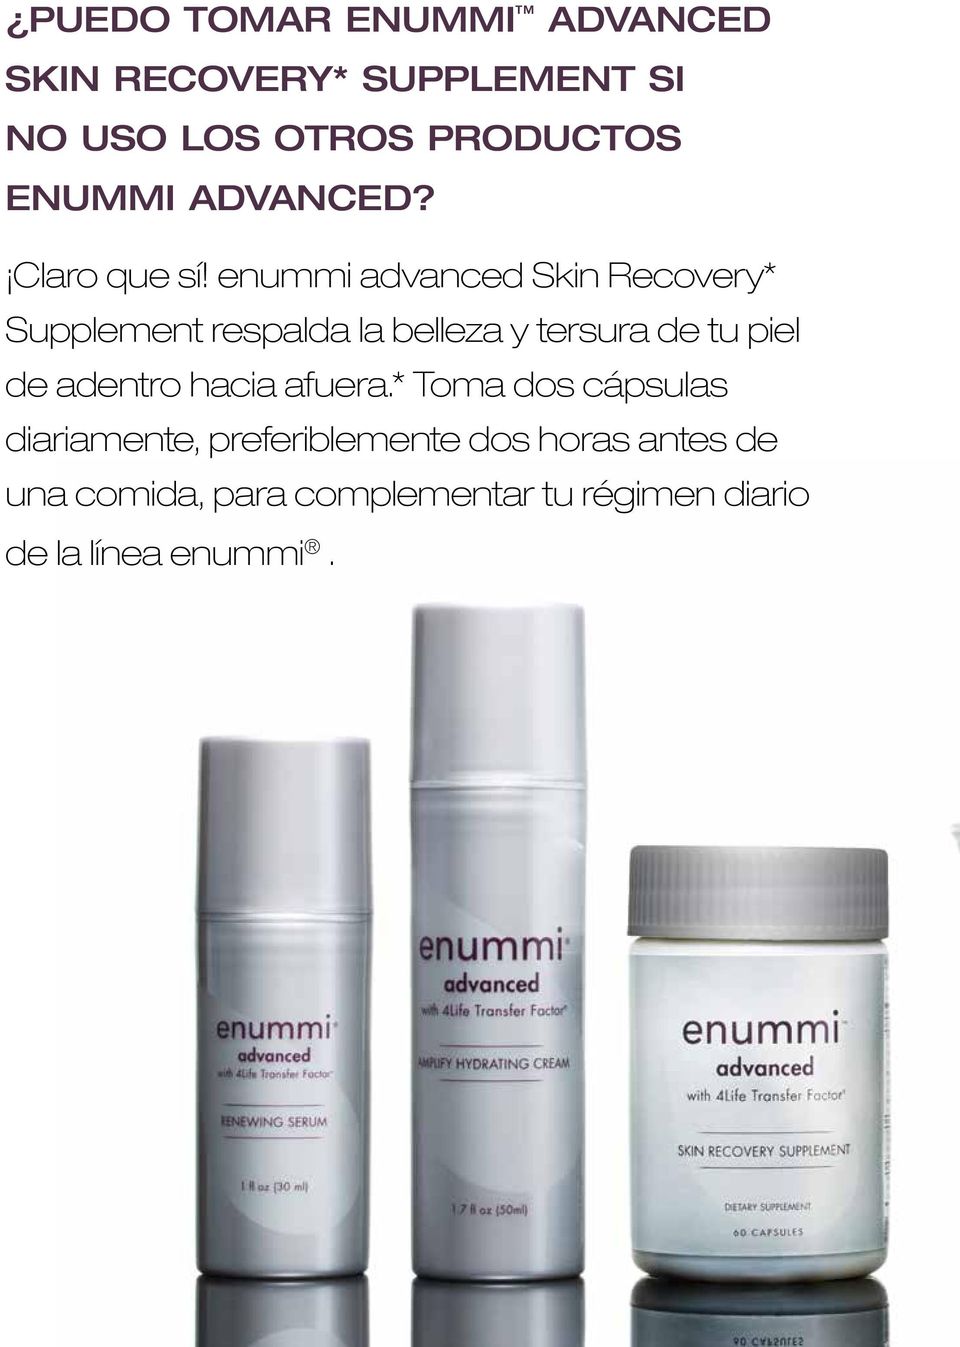 enummi advanced Skin Recovery* Supplement respalda la belleza y tersura de tu piel de